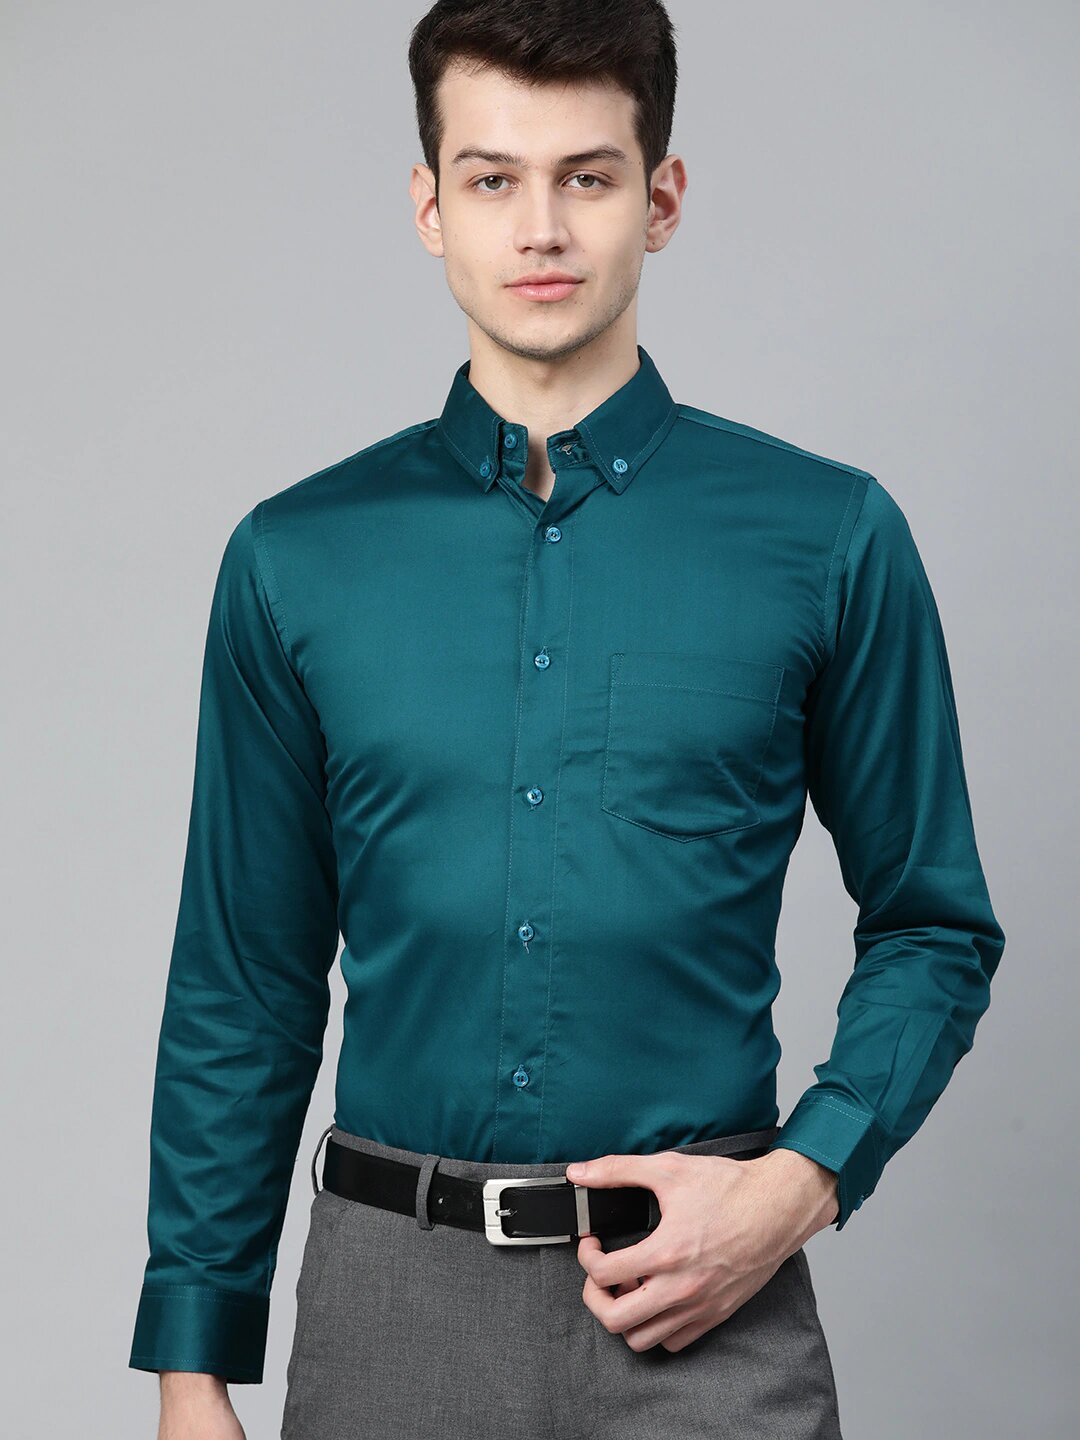 Men Teal Green Smart Slim Fit Solid Formal Shirt